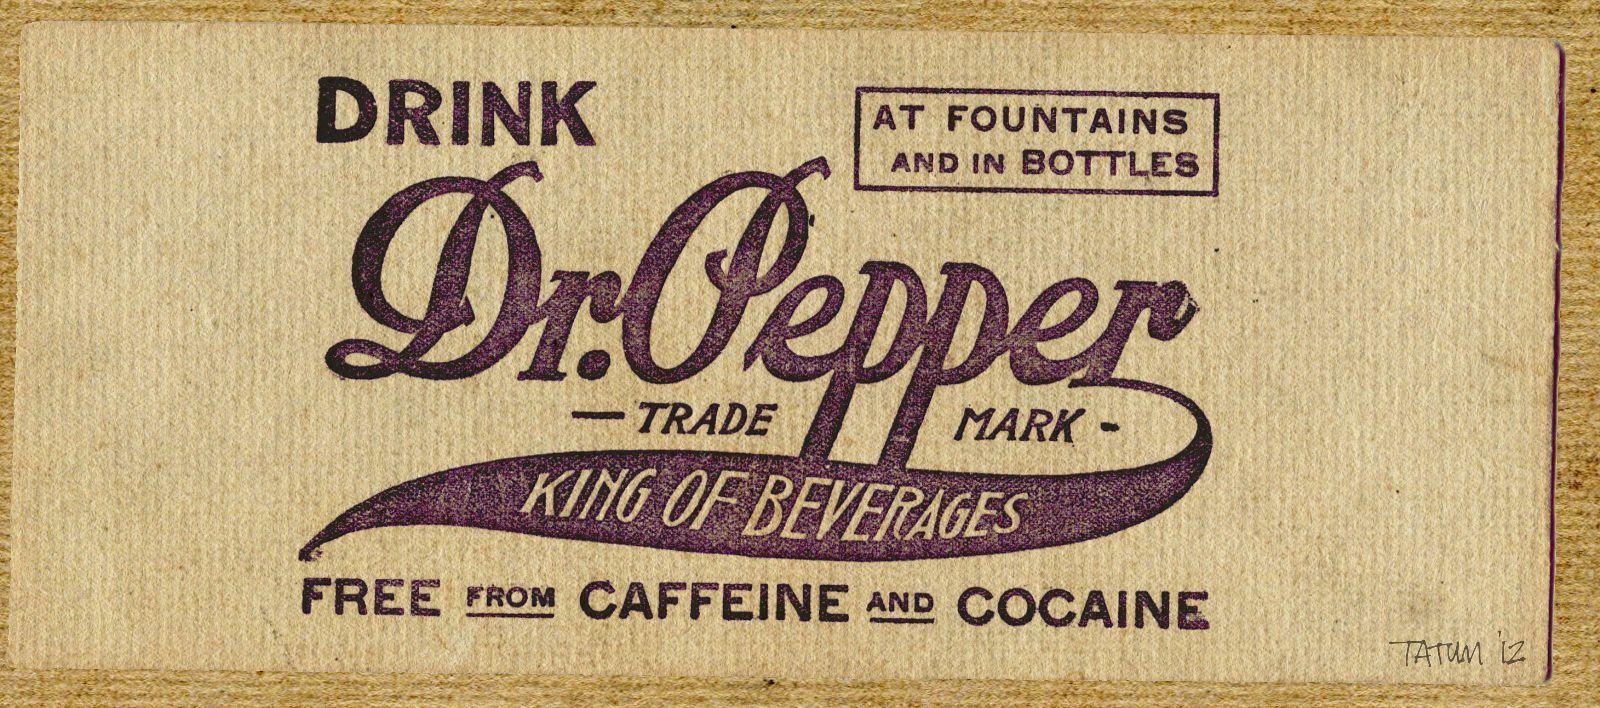 Vintage Dr Pepper Logo - Dr. Pepper revived by Keith Tatum | Vintage Design | Typography ...